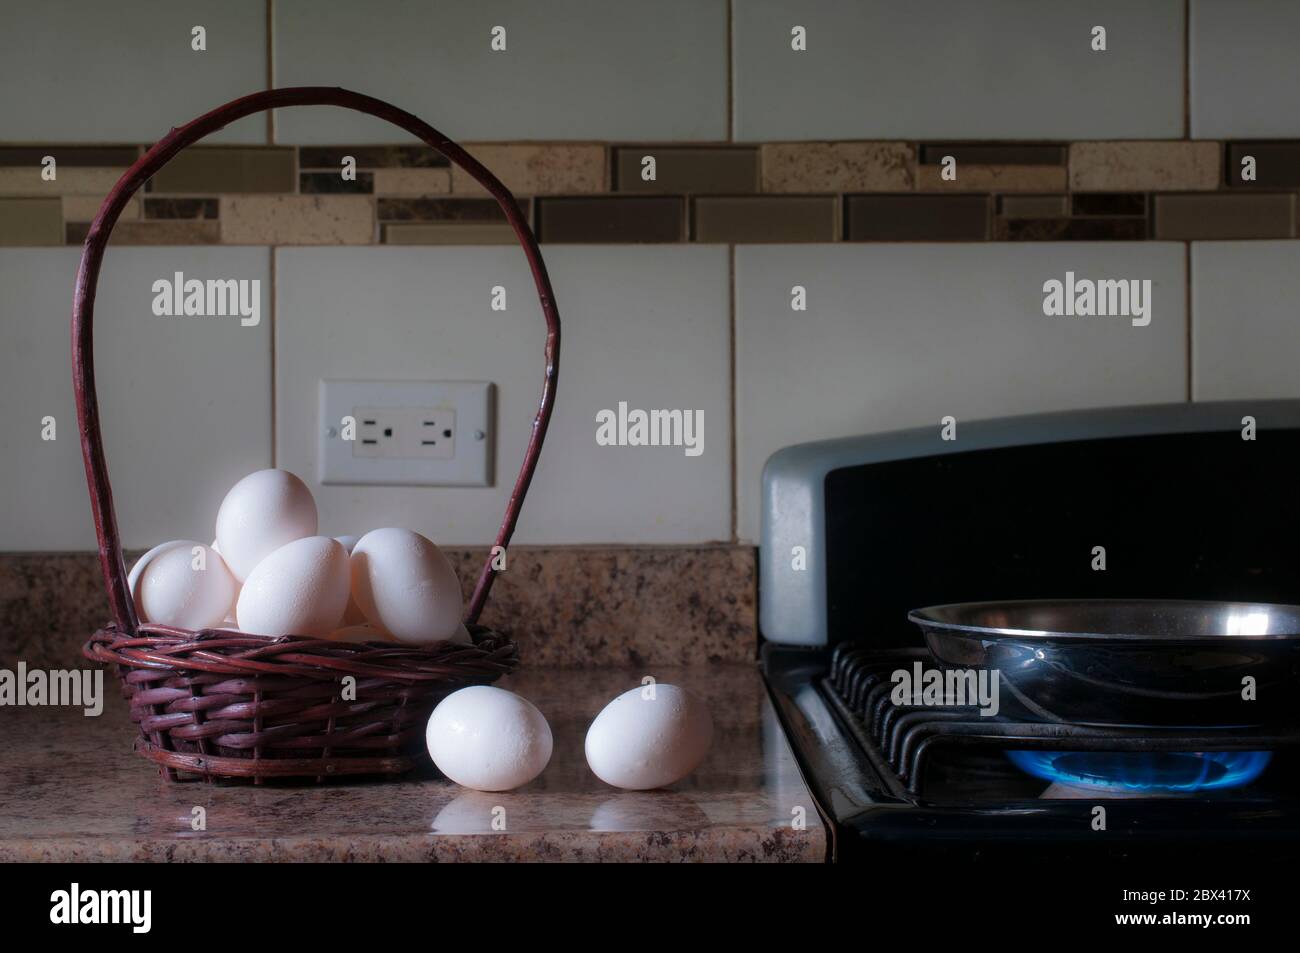 Eine eiserne Pfanne auf dem Kaminfeuer mit einem Korb mit weißen Eiern an der Seite, Konzepte der morgendlichen Mahlzeit Zubereitung in einer Küche, durch ein Fenster Licht beleuchtet Stockfoto